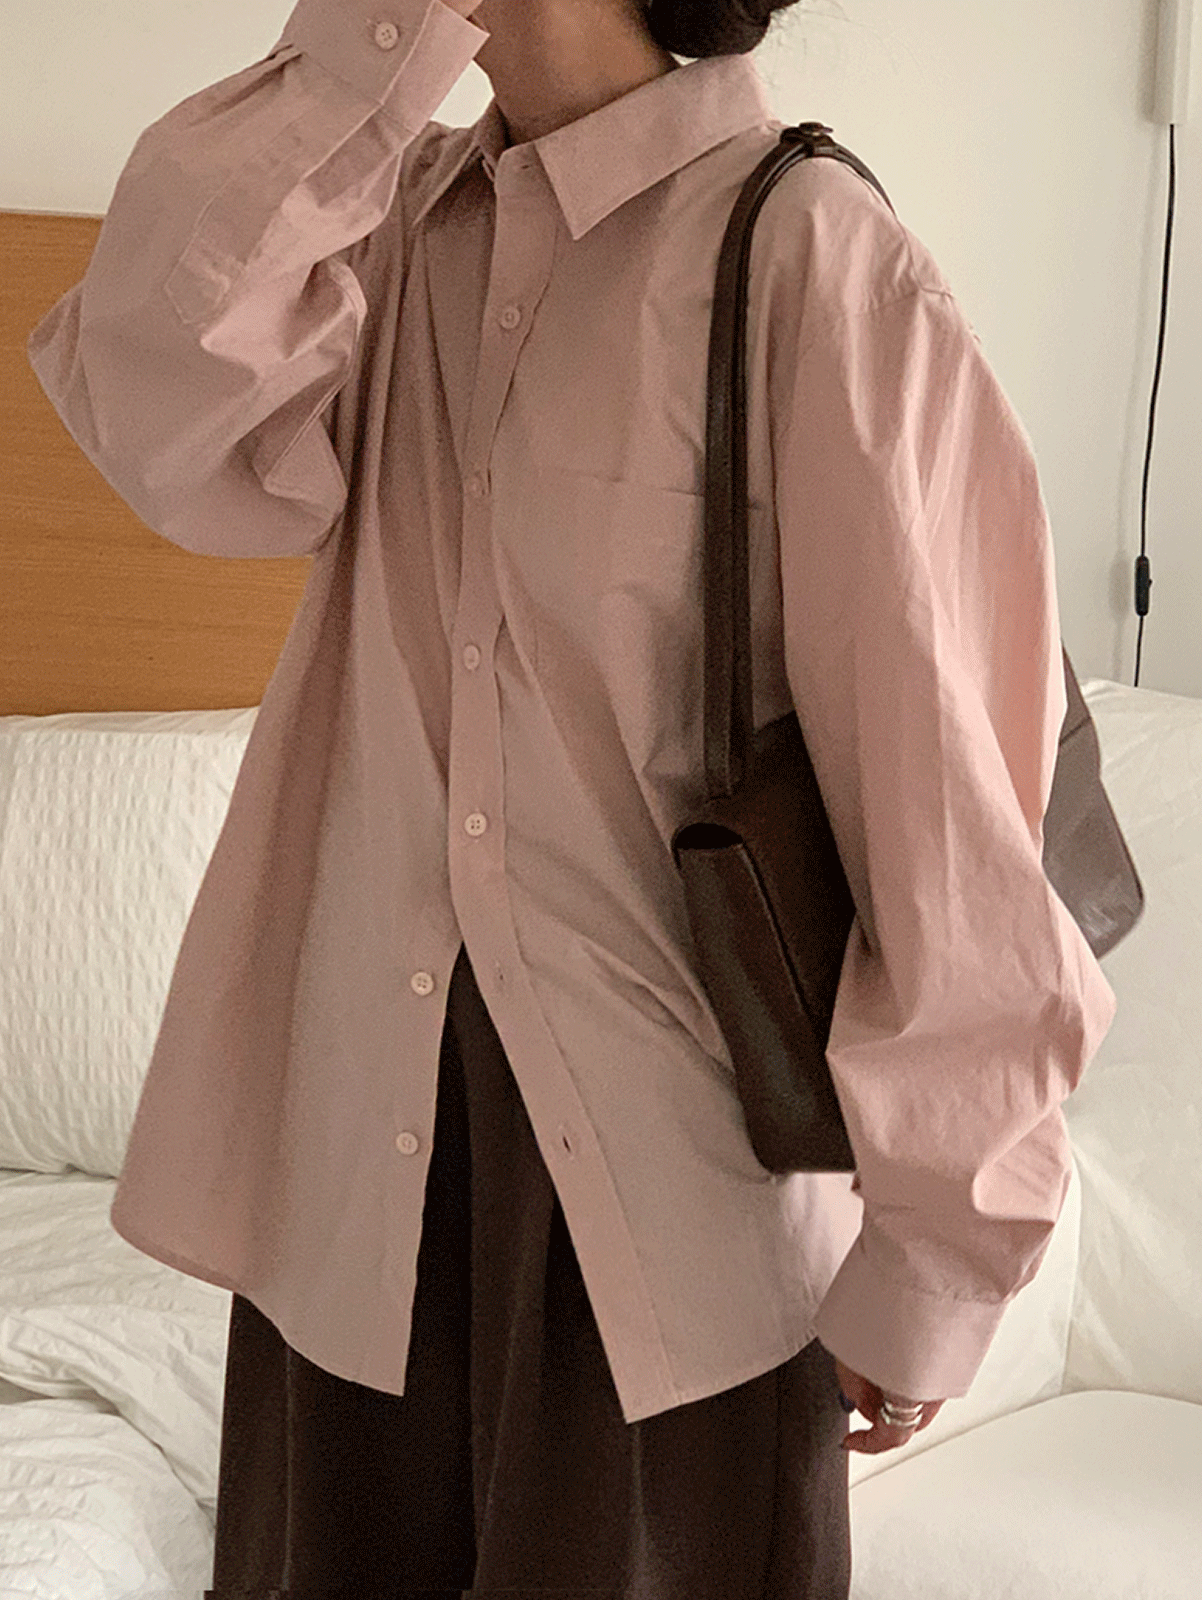 [당일발송] clean cotton shirts (8colors) 주문폭주! 네이비, 소라, 연베이지, 차콜, 핑크, 화이트 당일발송